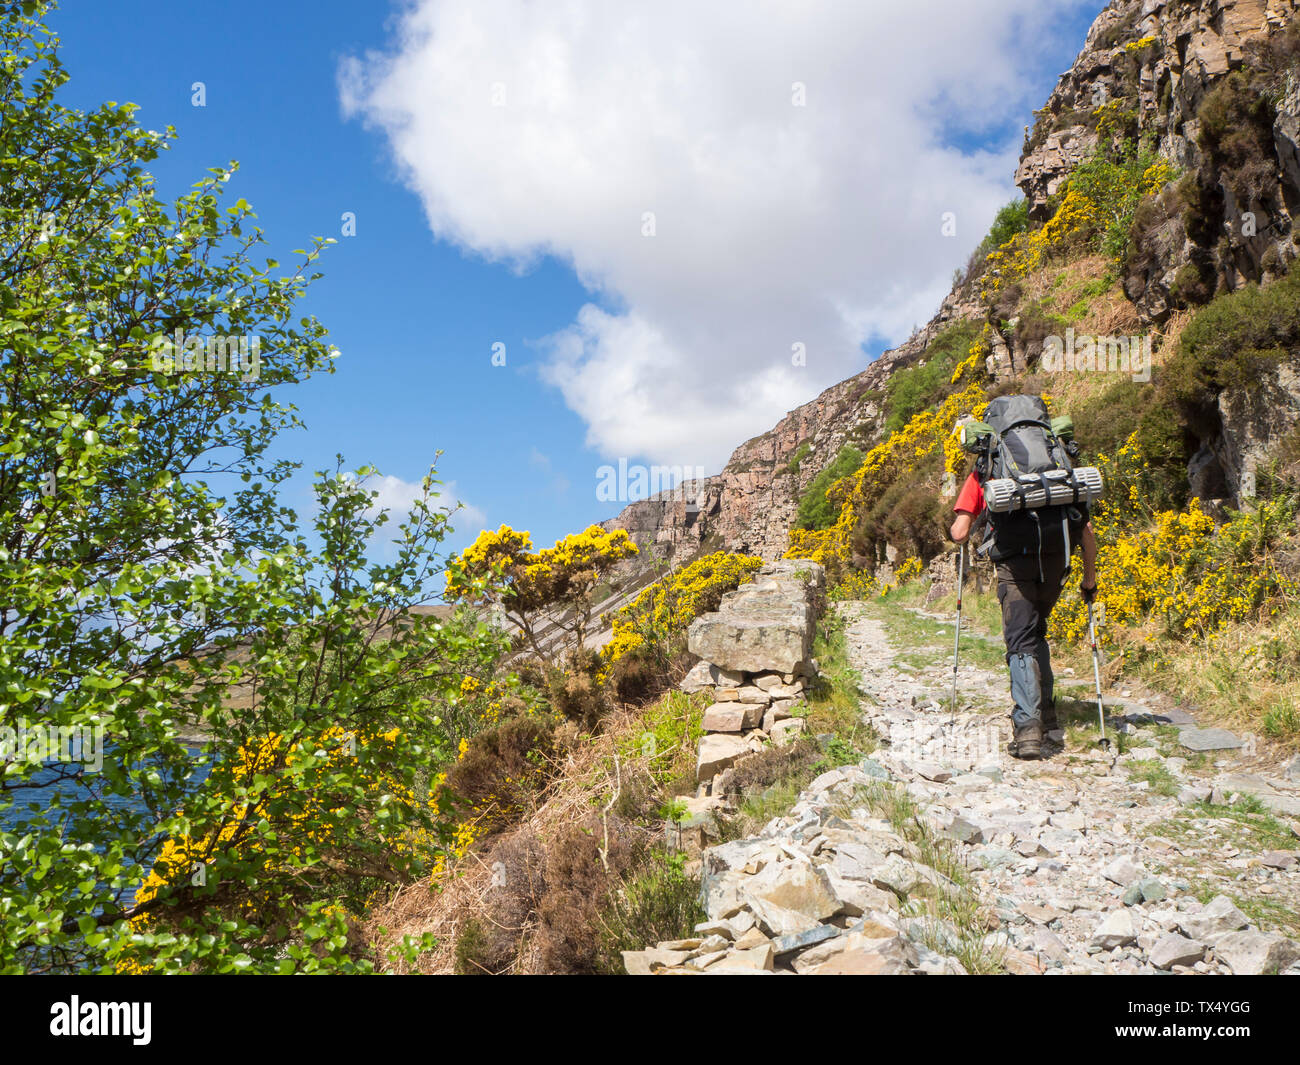 Great Britain, Scotland, Northwest Highlands, hiker at Loch Gleann Dubh Stock Photo